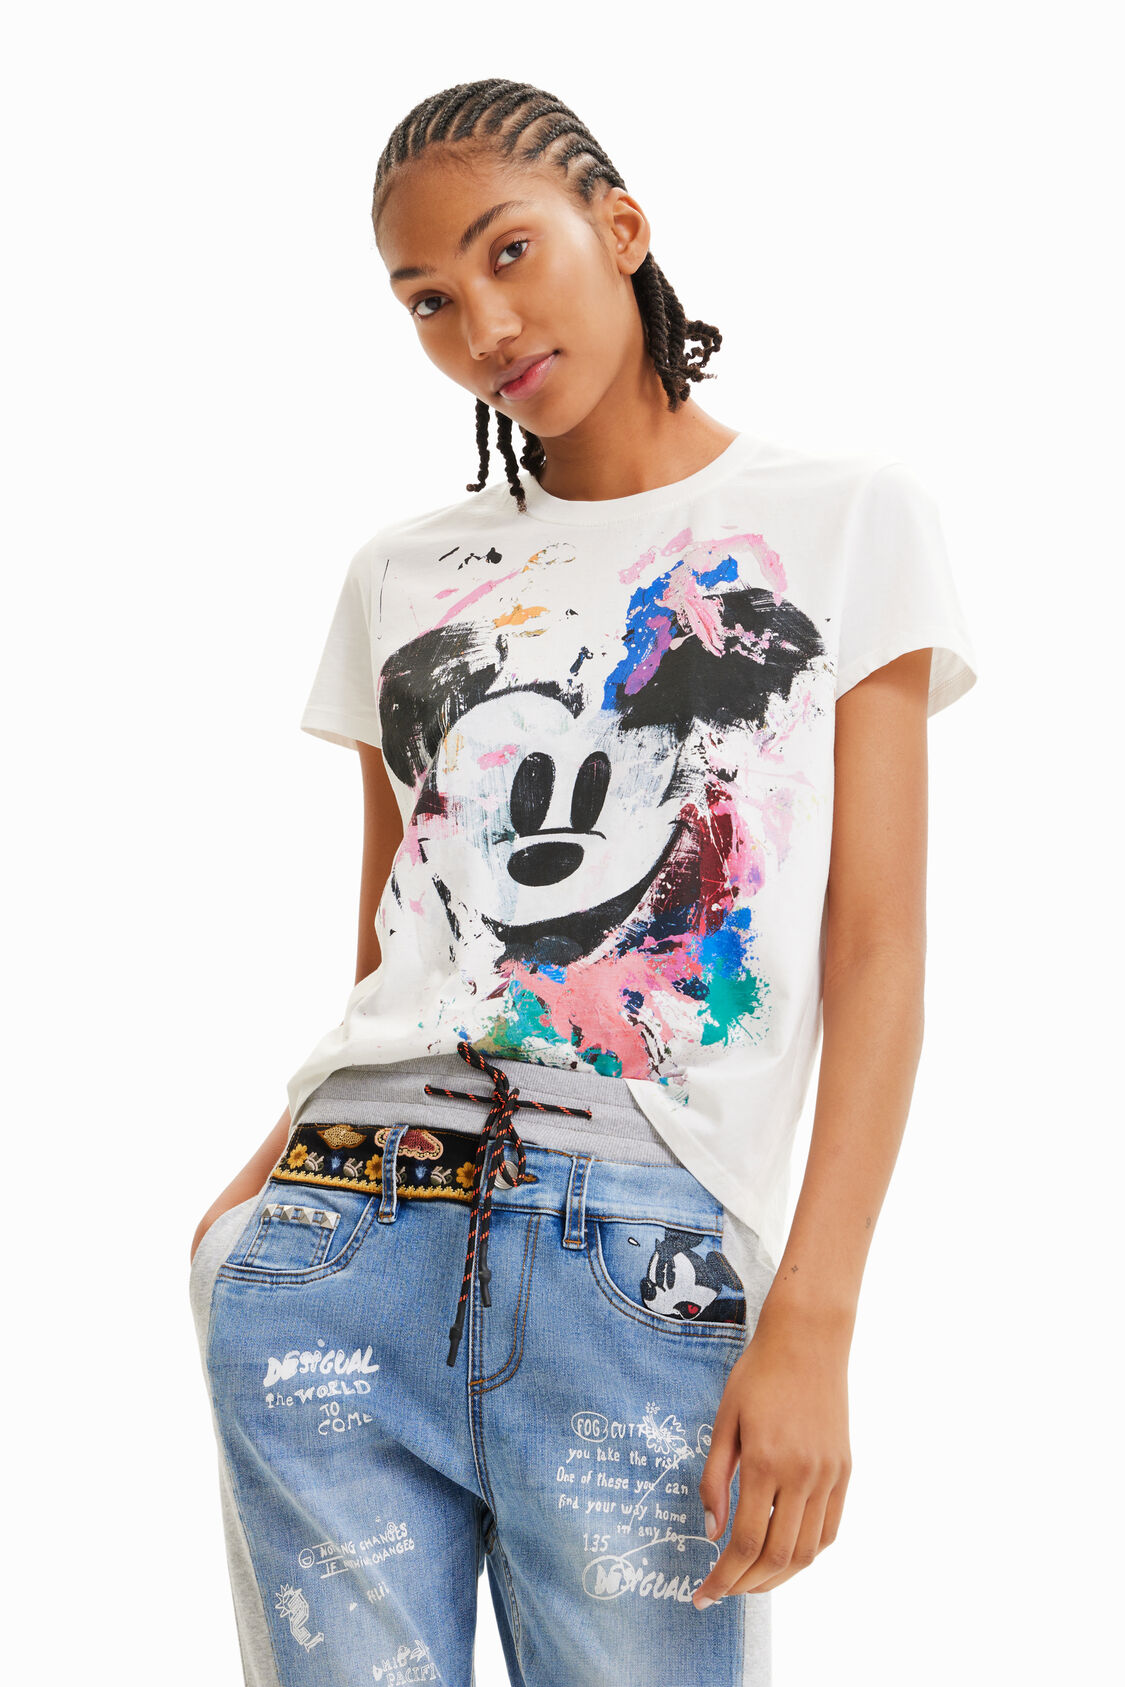 martillo No quiero Bastante Camiseta Mickey Mouse arty de mujer I Desigual.com